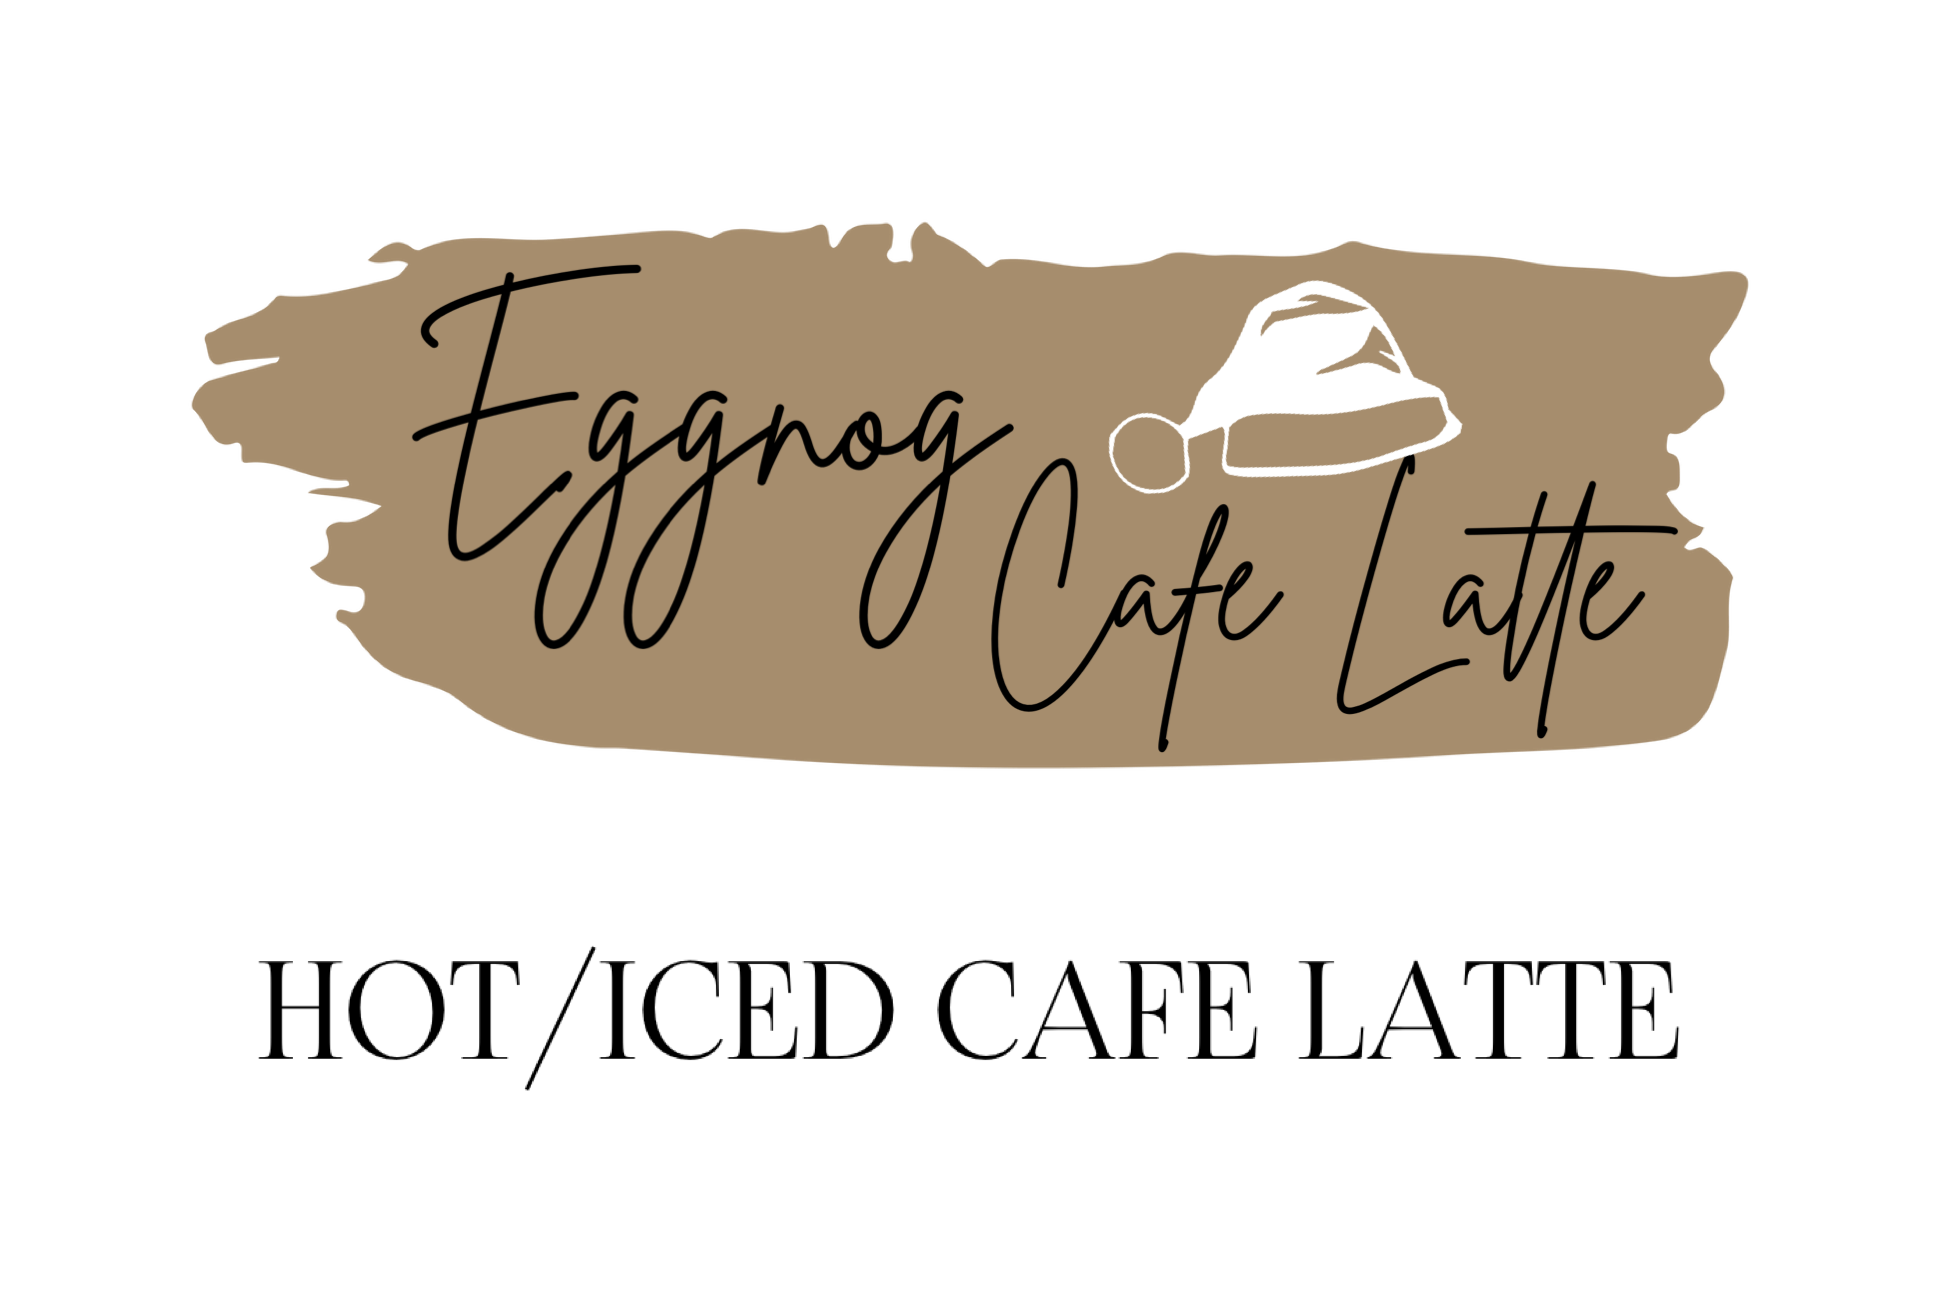 Eggnog Cafe Latte